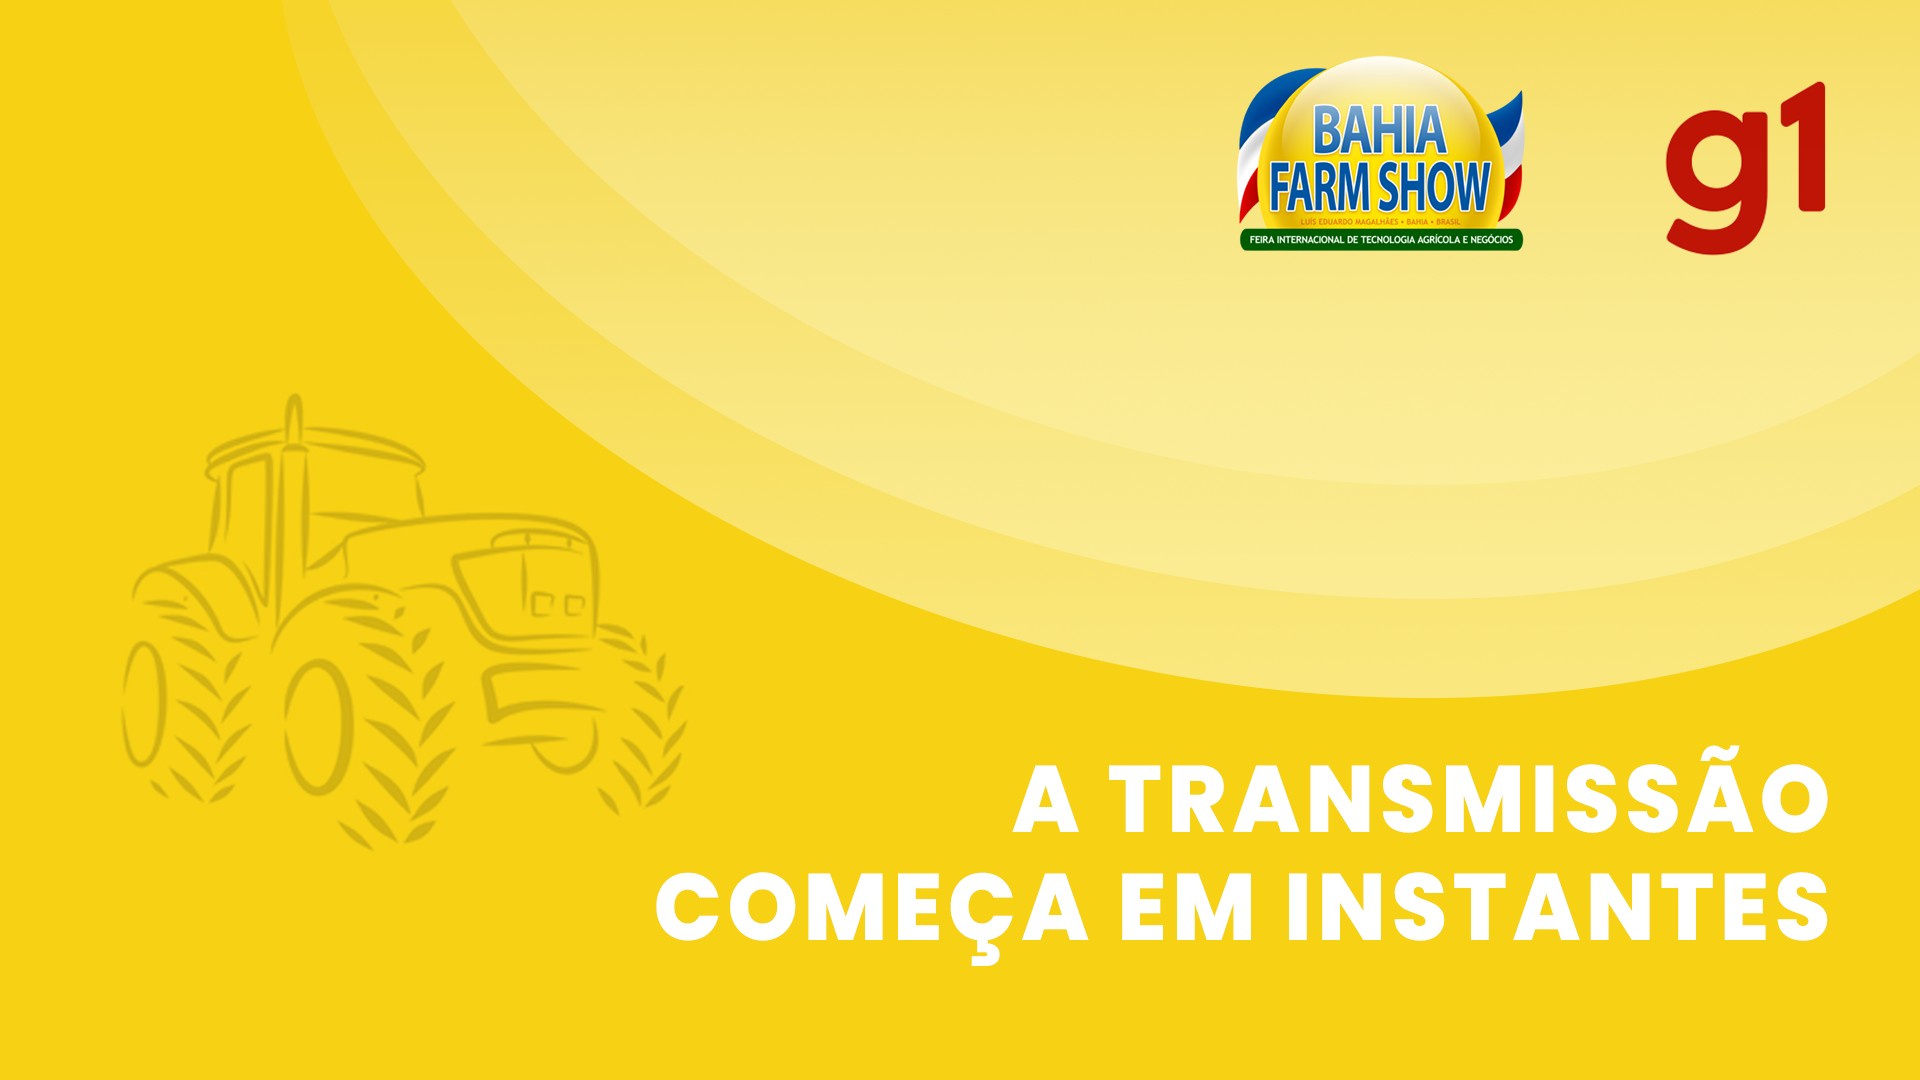 Agricultura de baixo carbono e ESG são discutidos em painel da Bahia Farm Show; começamos em instantes